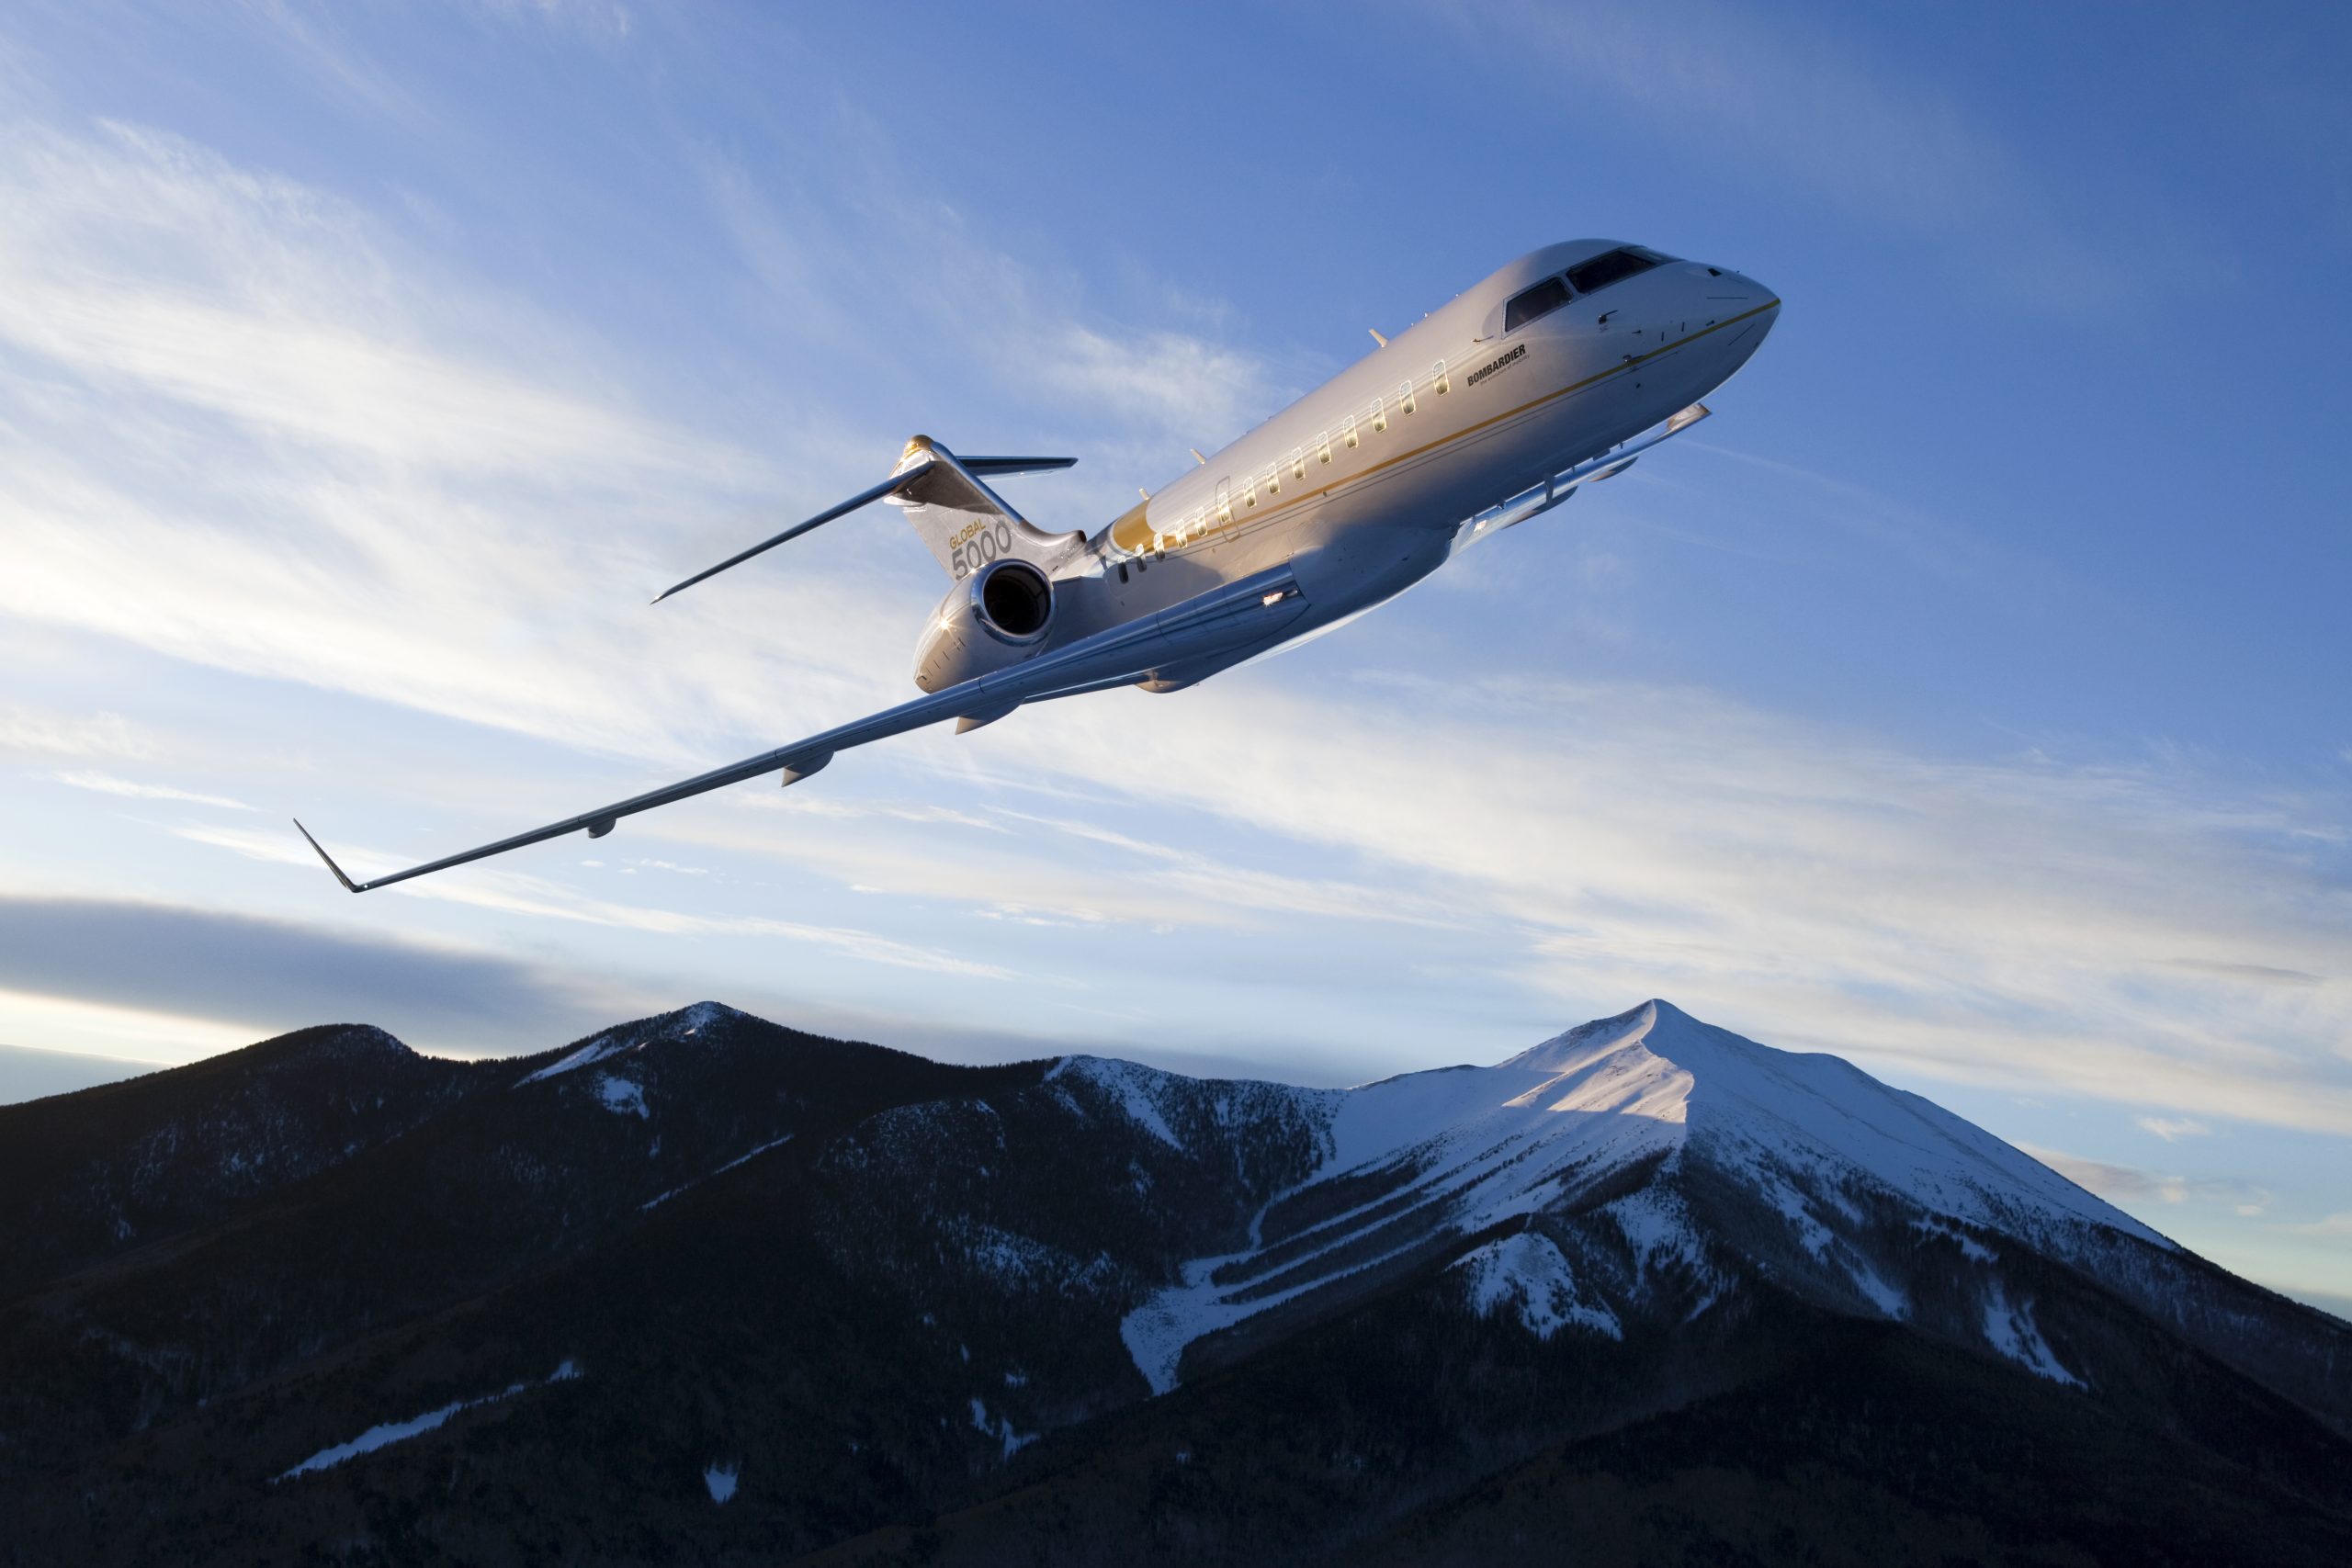 Bombardier Global 5000